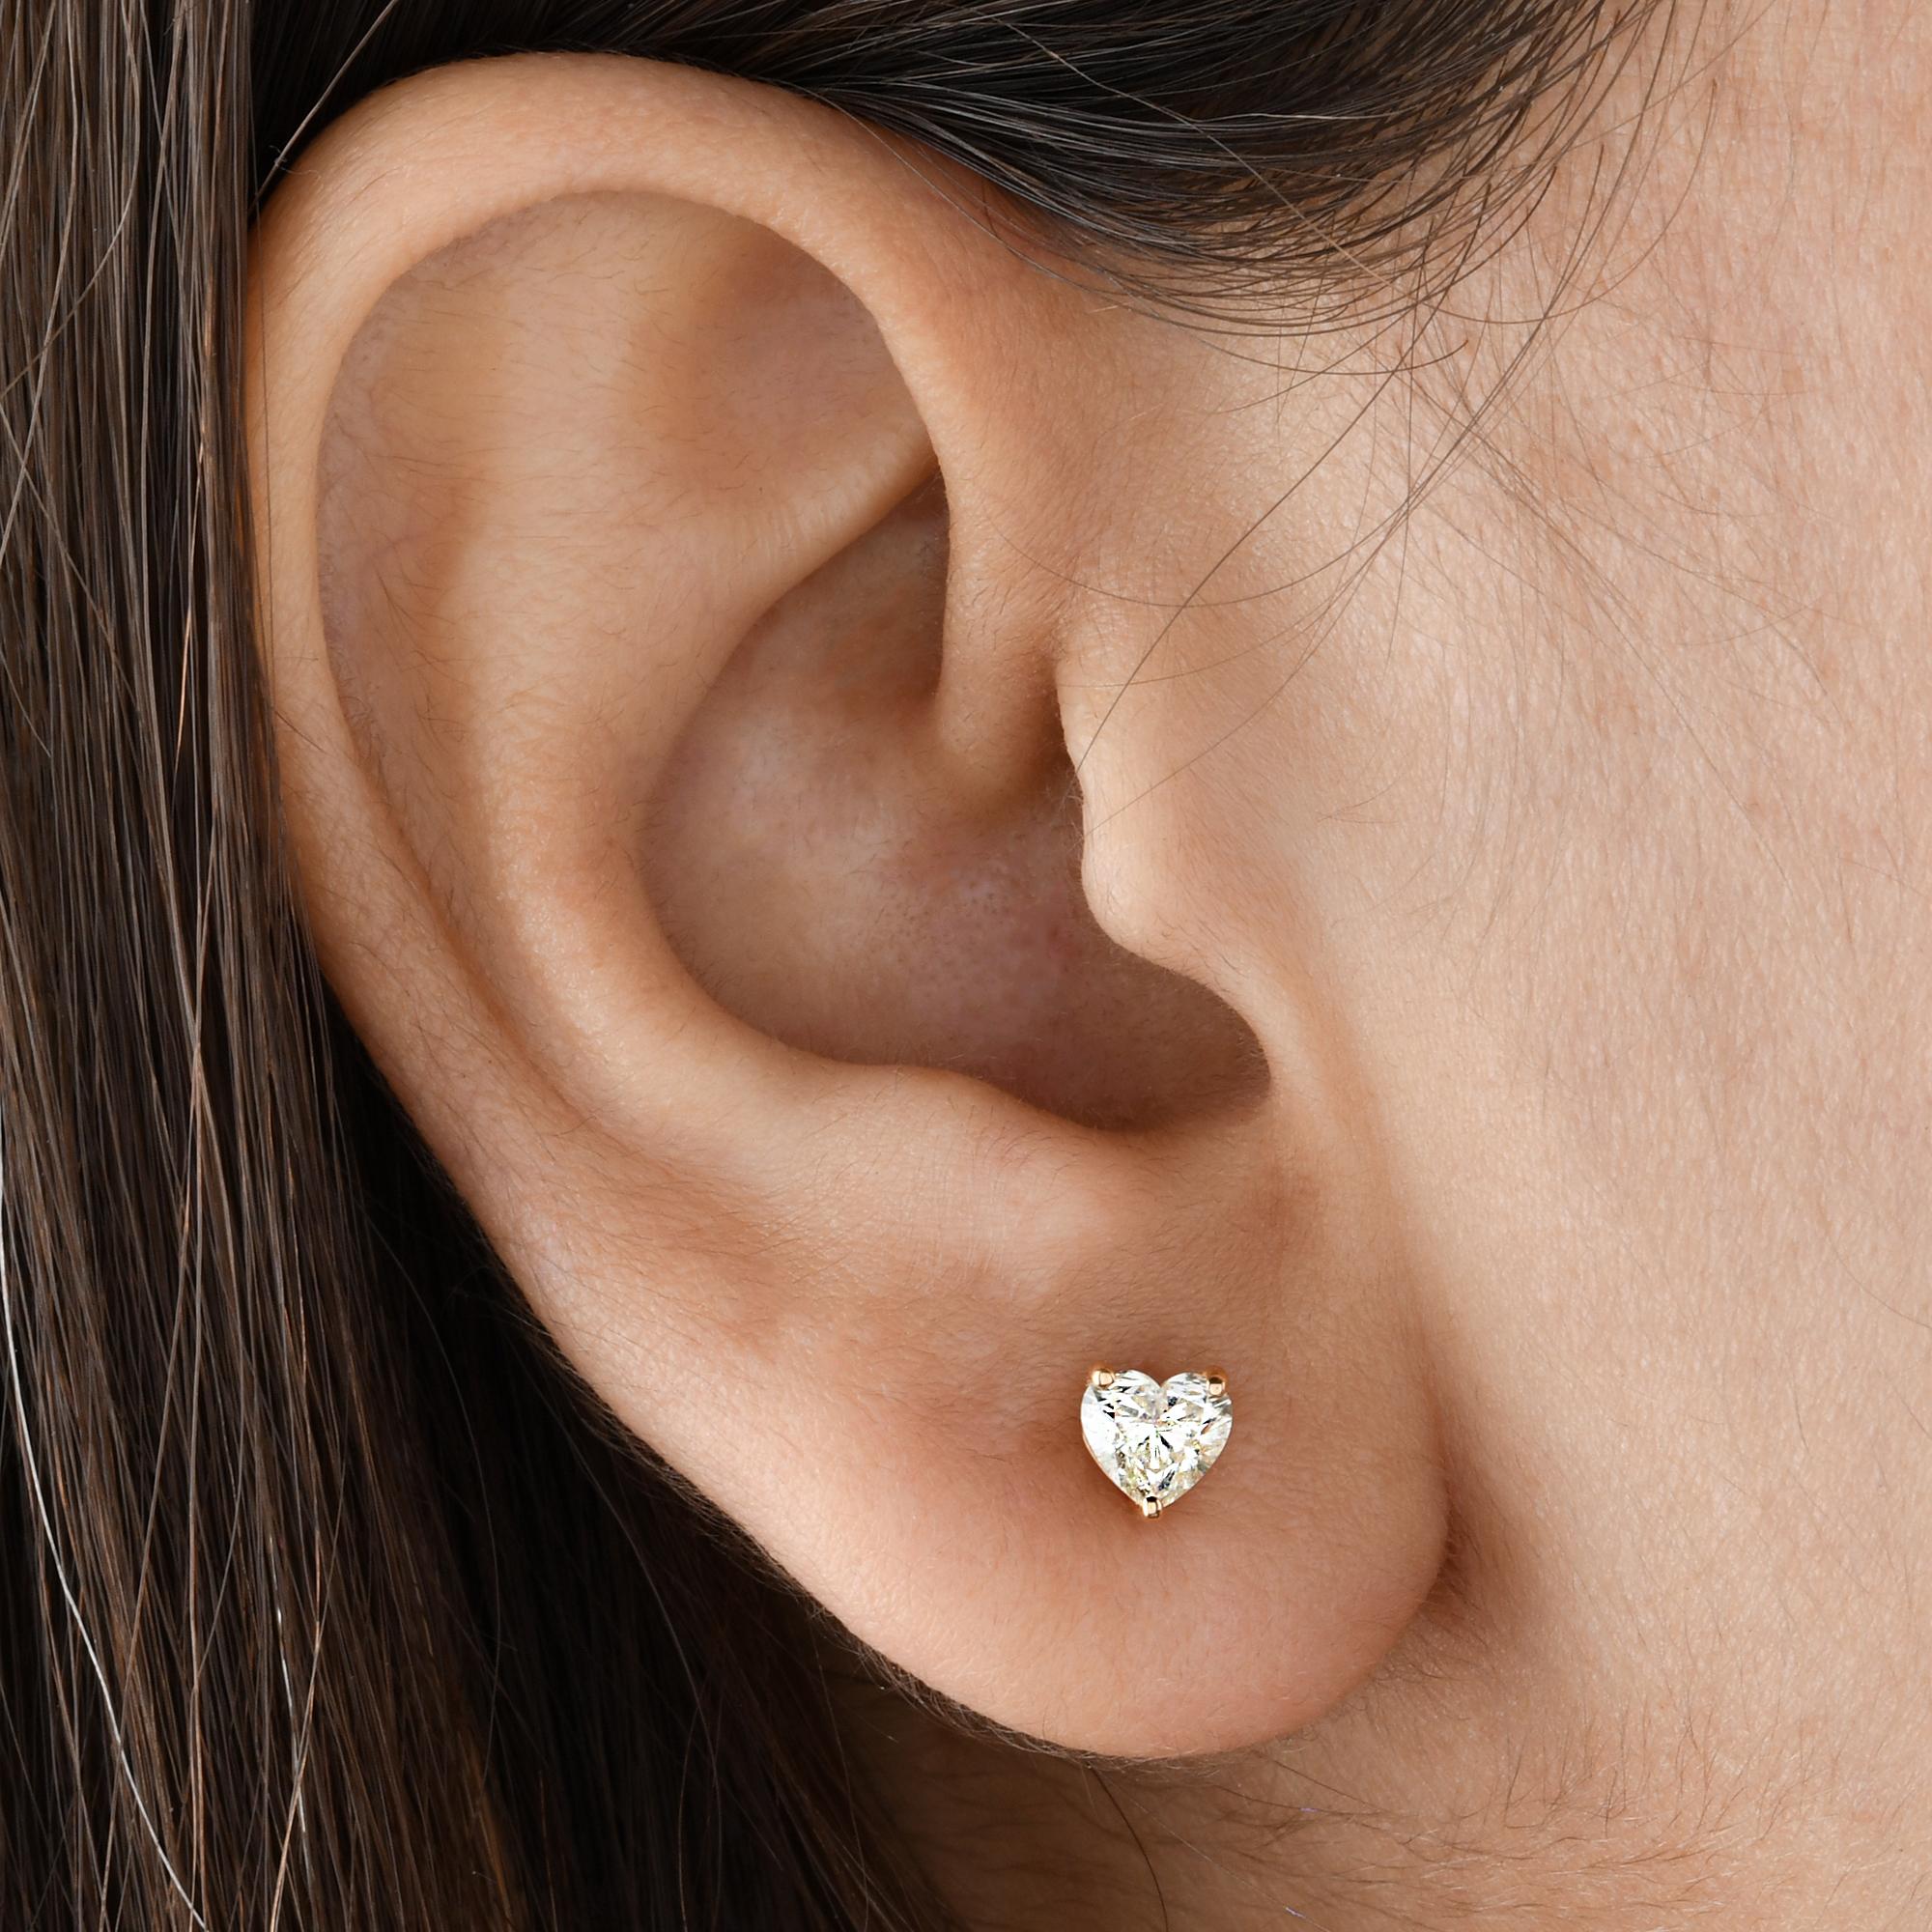 how big is 5 mm earrings